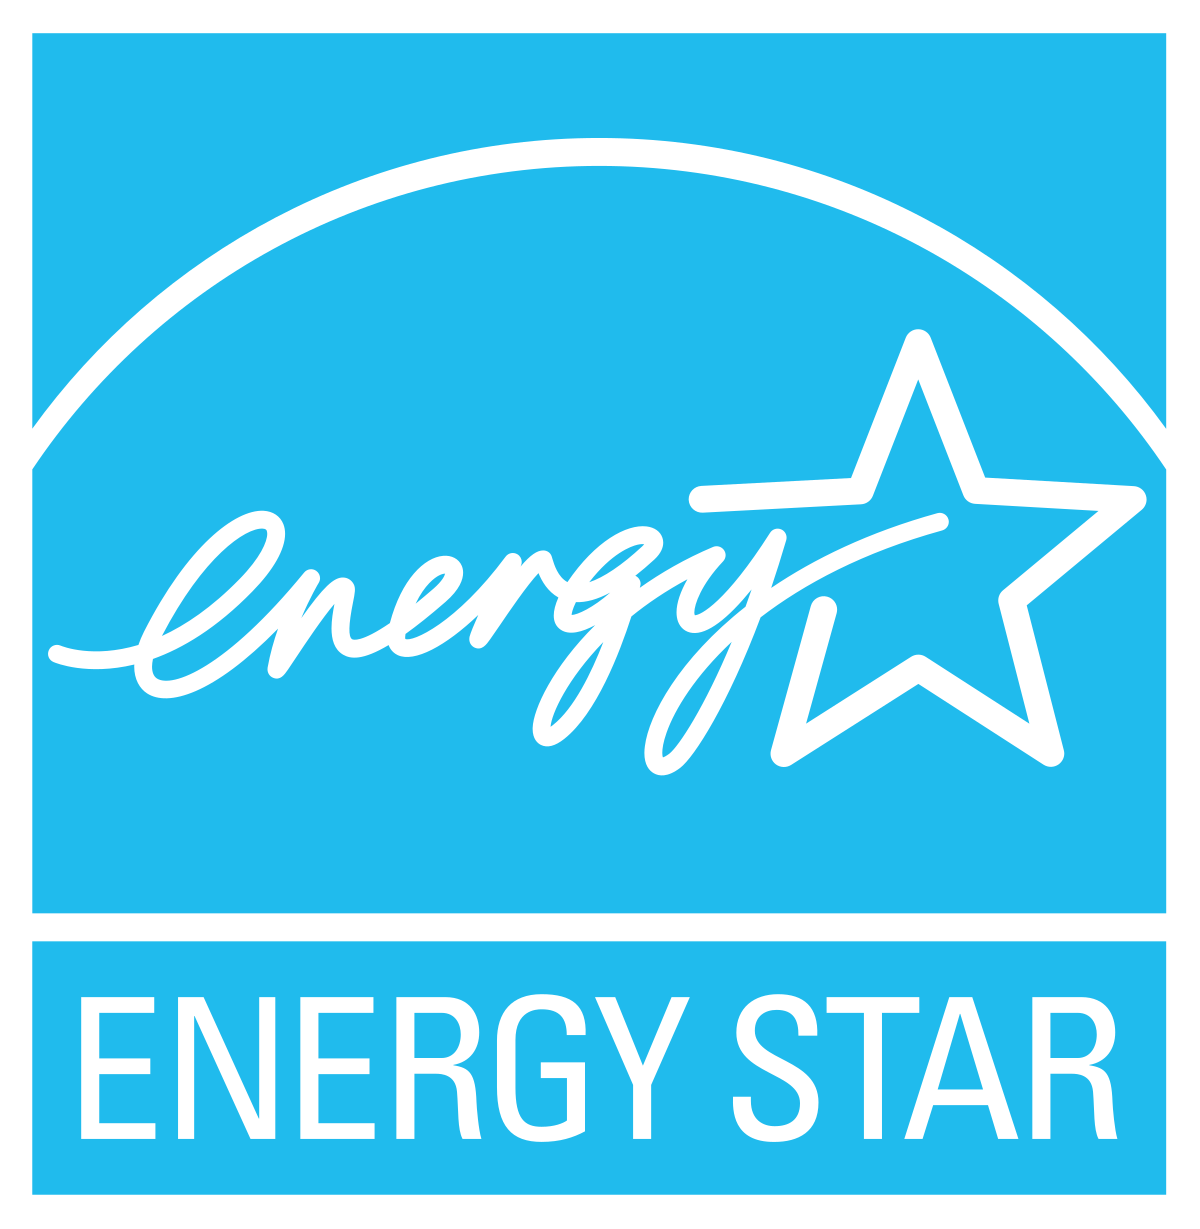 Atlantic City Electric Energy Star Rebates ElectricRebate